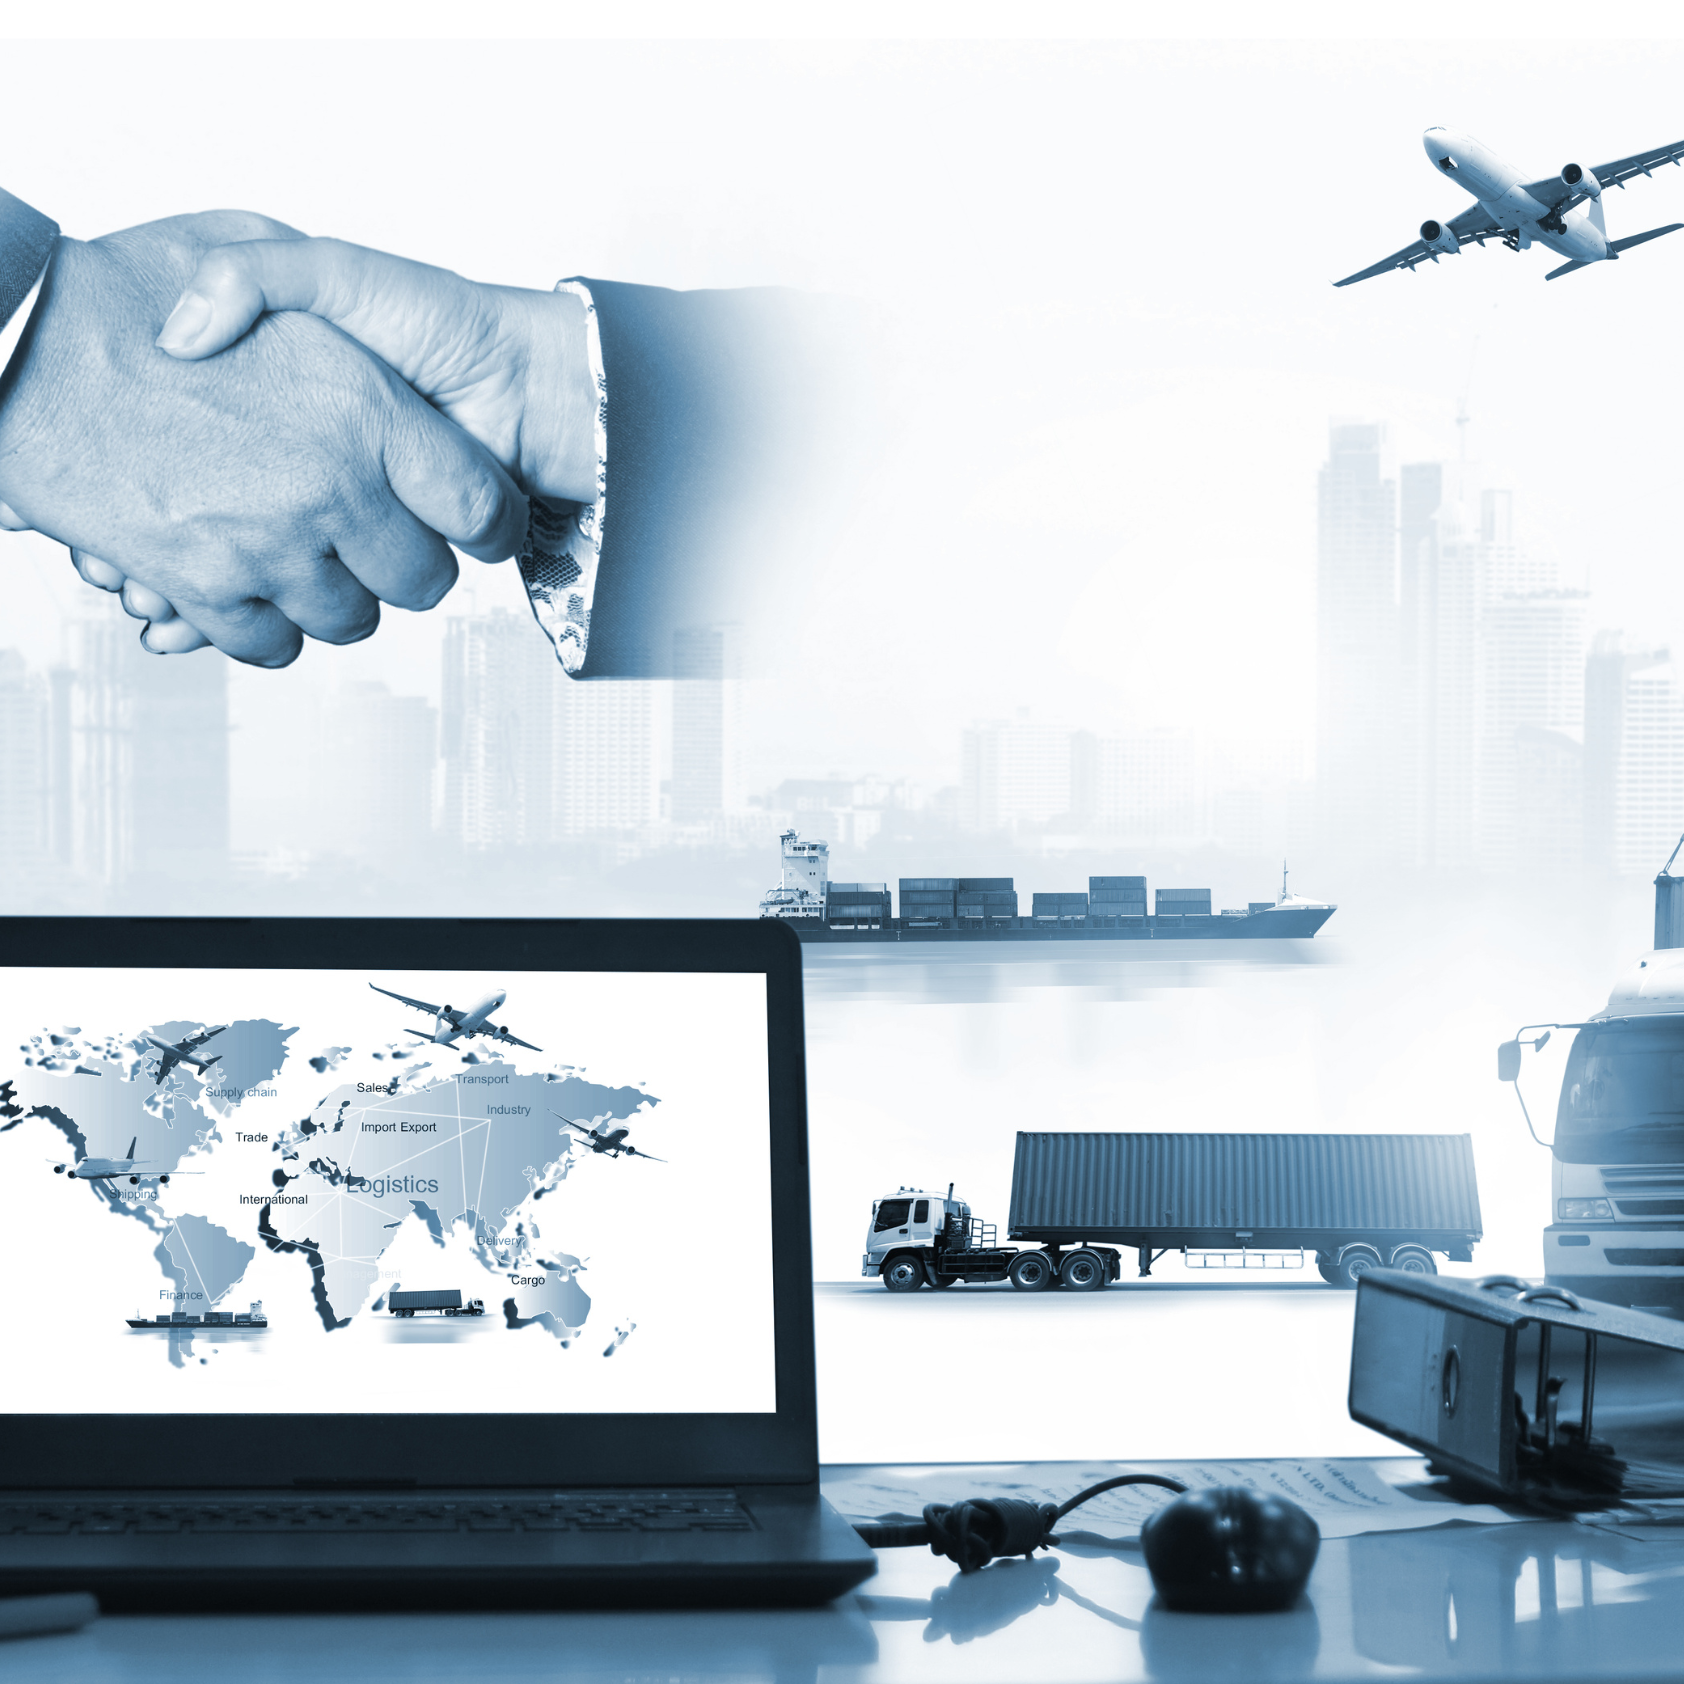 Image d'une poignée de main devant des moyens de transport (avion, navire cargo, camions) et un ordinateur portable affichant une carte du monde.